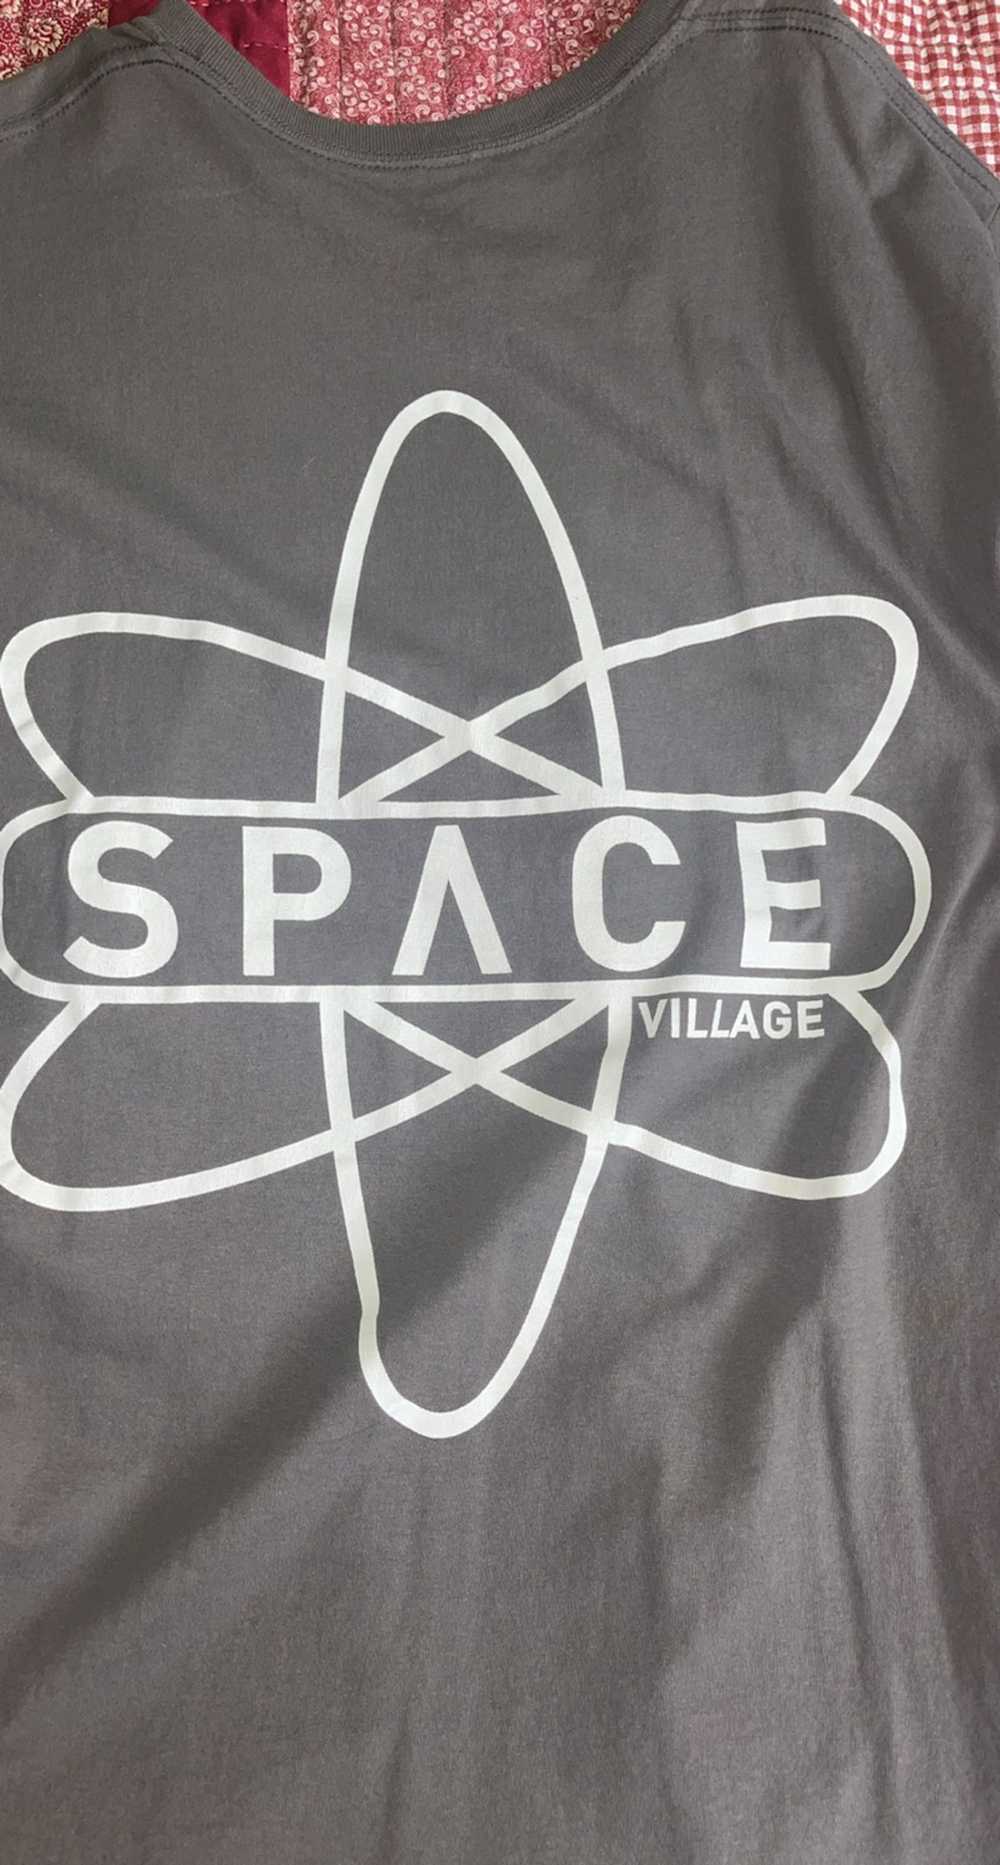 Travis Scott Travis Scott Space Village T shirt - image 4